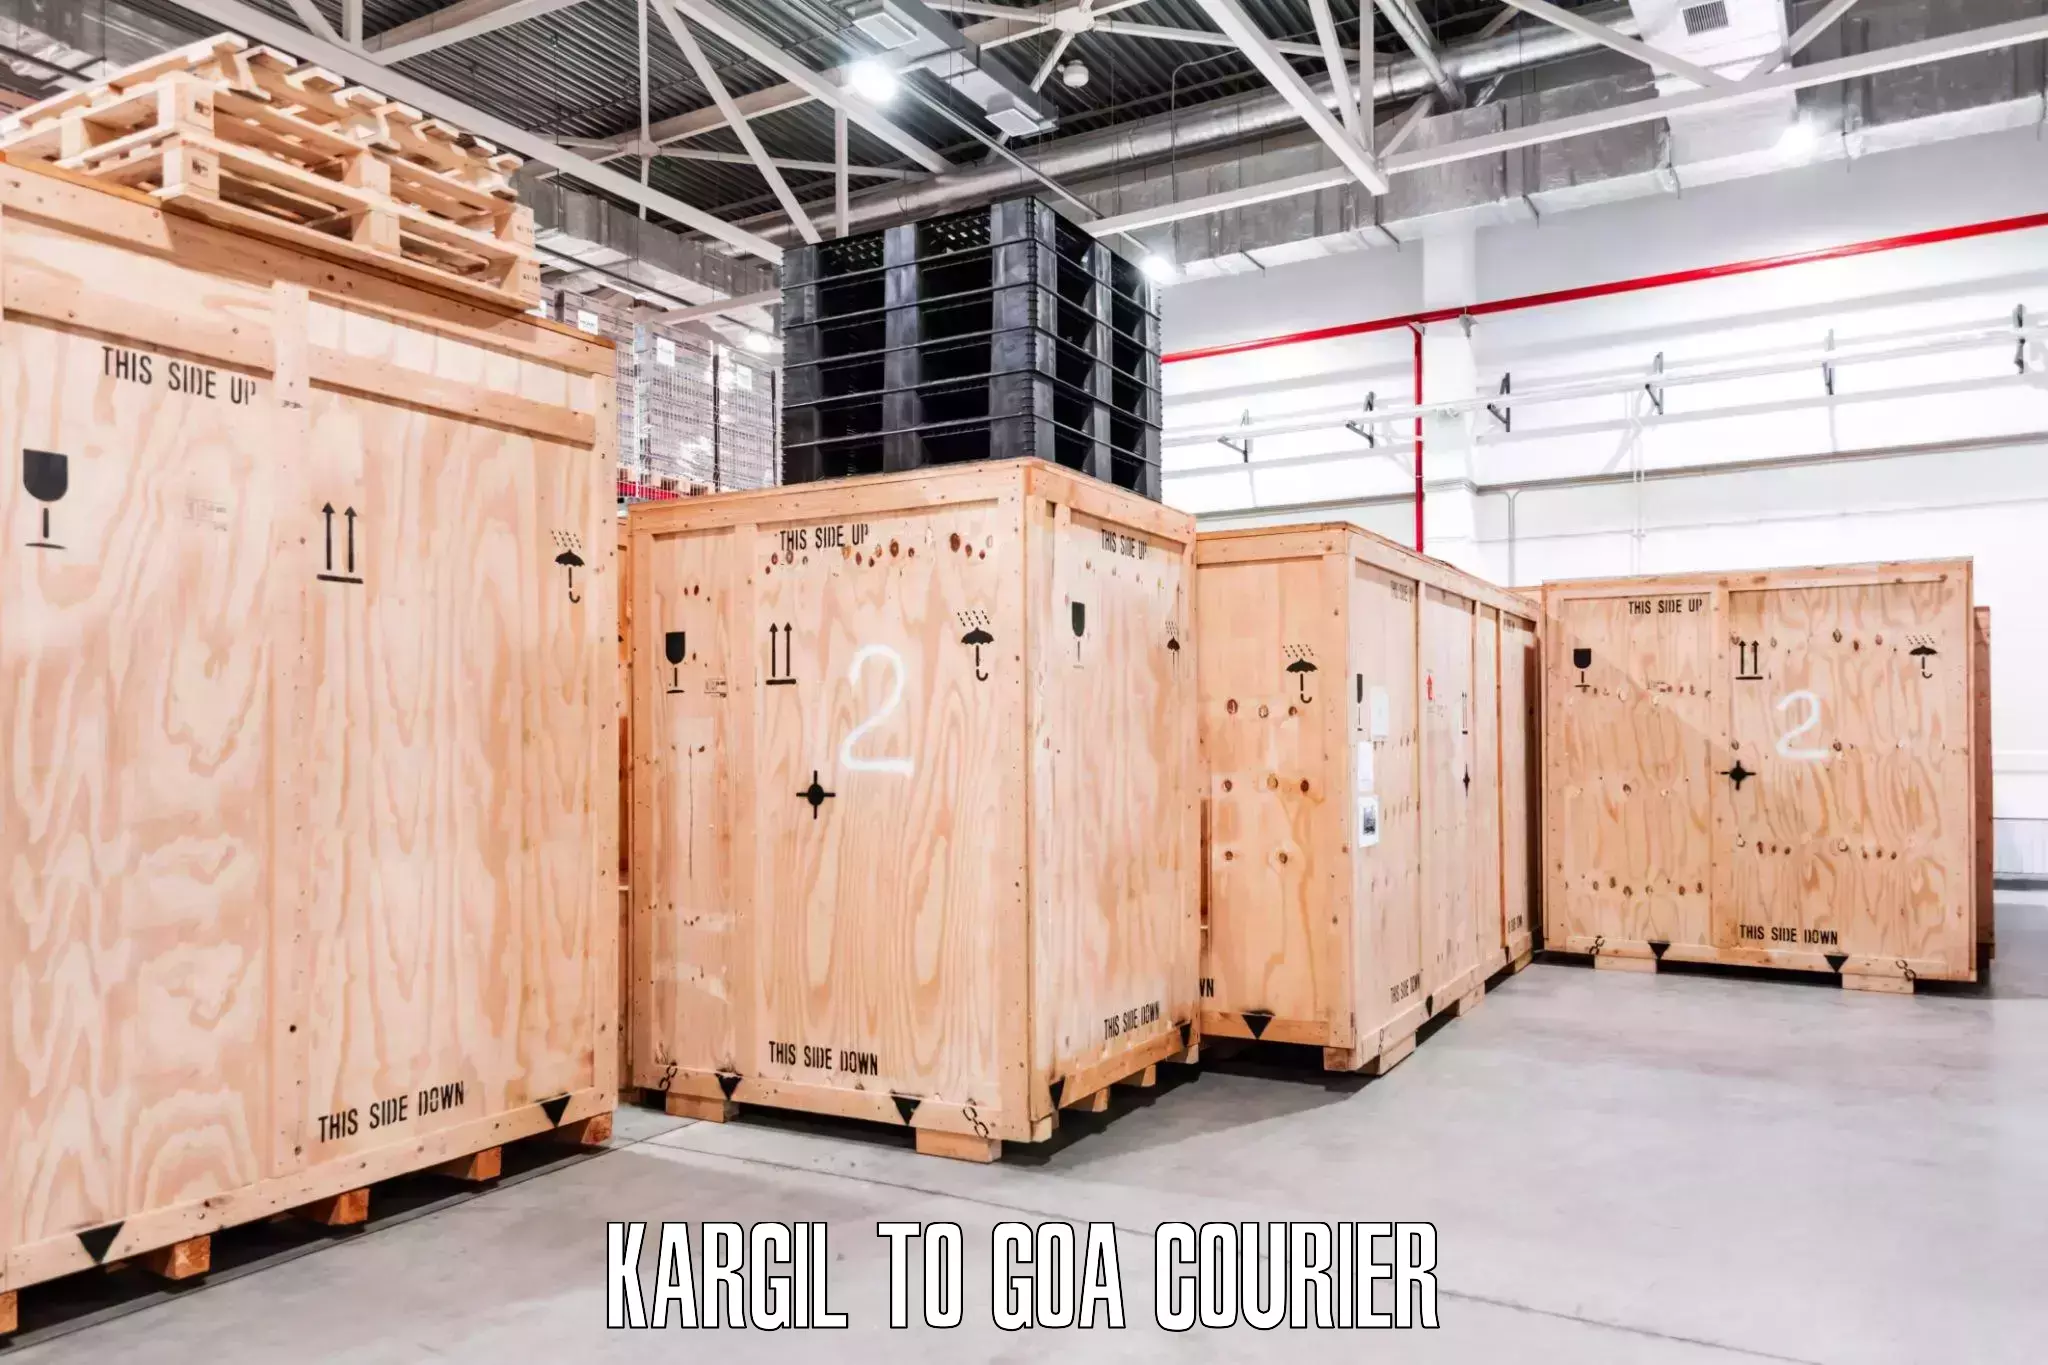 Professional packing services Kargil to Bicholim